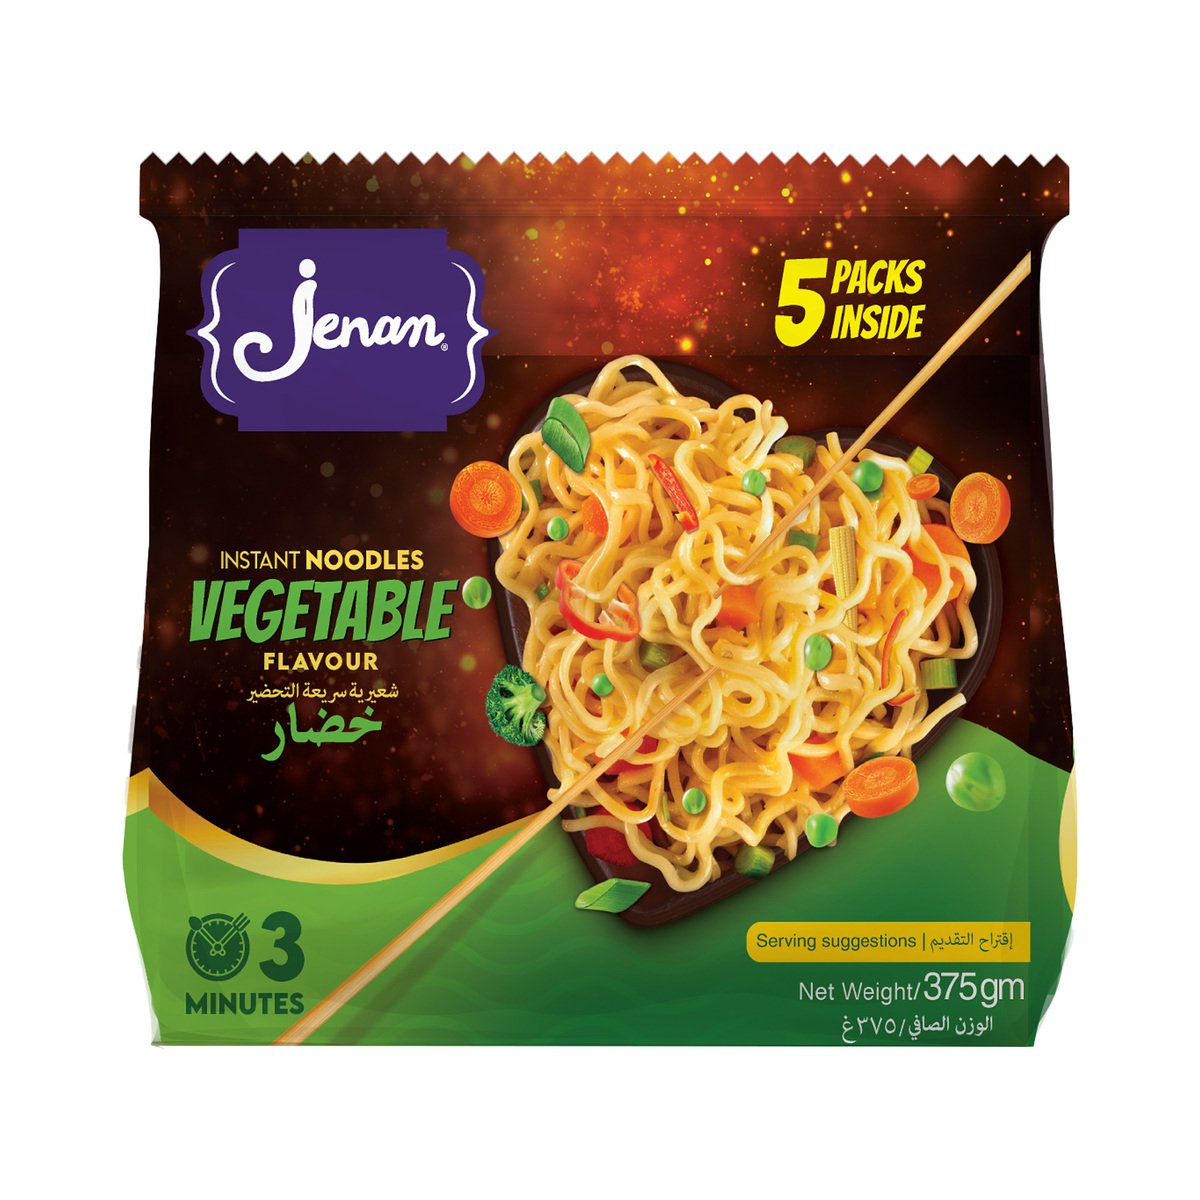 Jenan Instant Noodles Vegetable Flavour 5 x 75 g